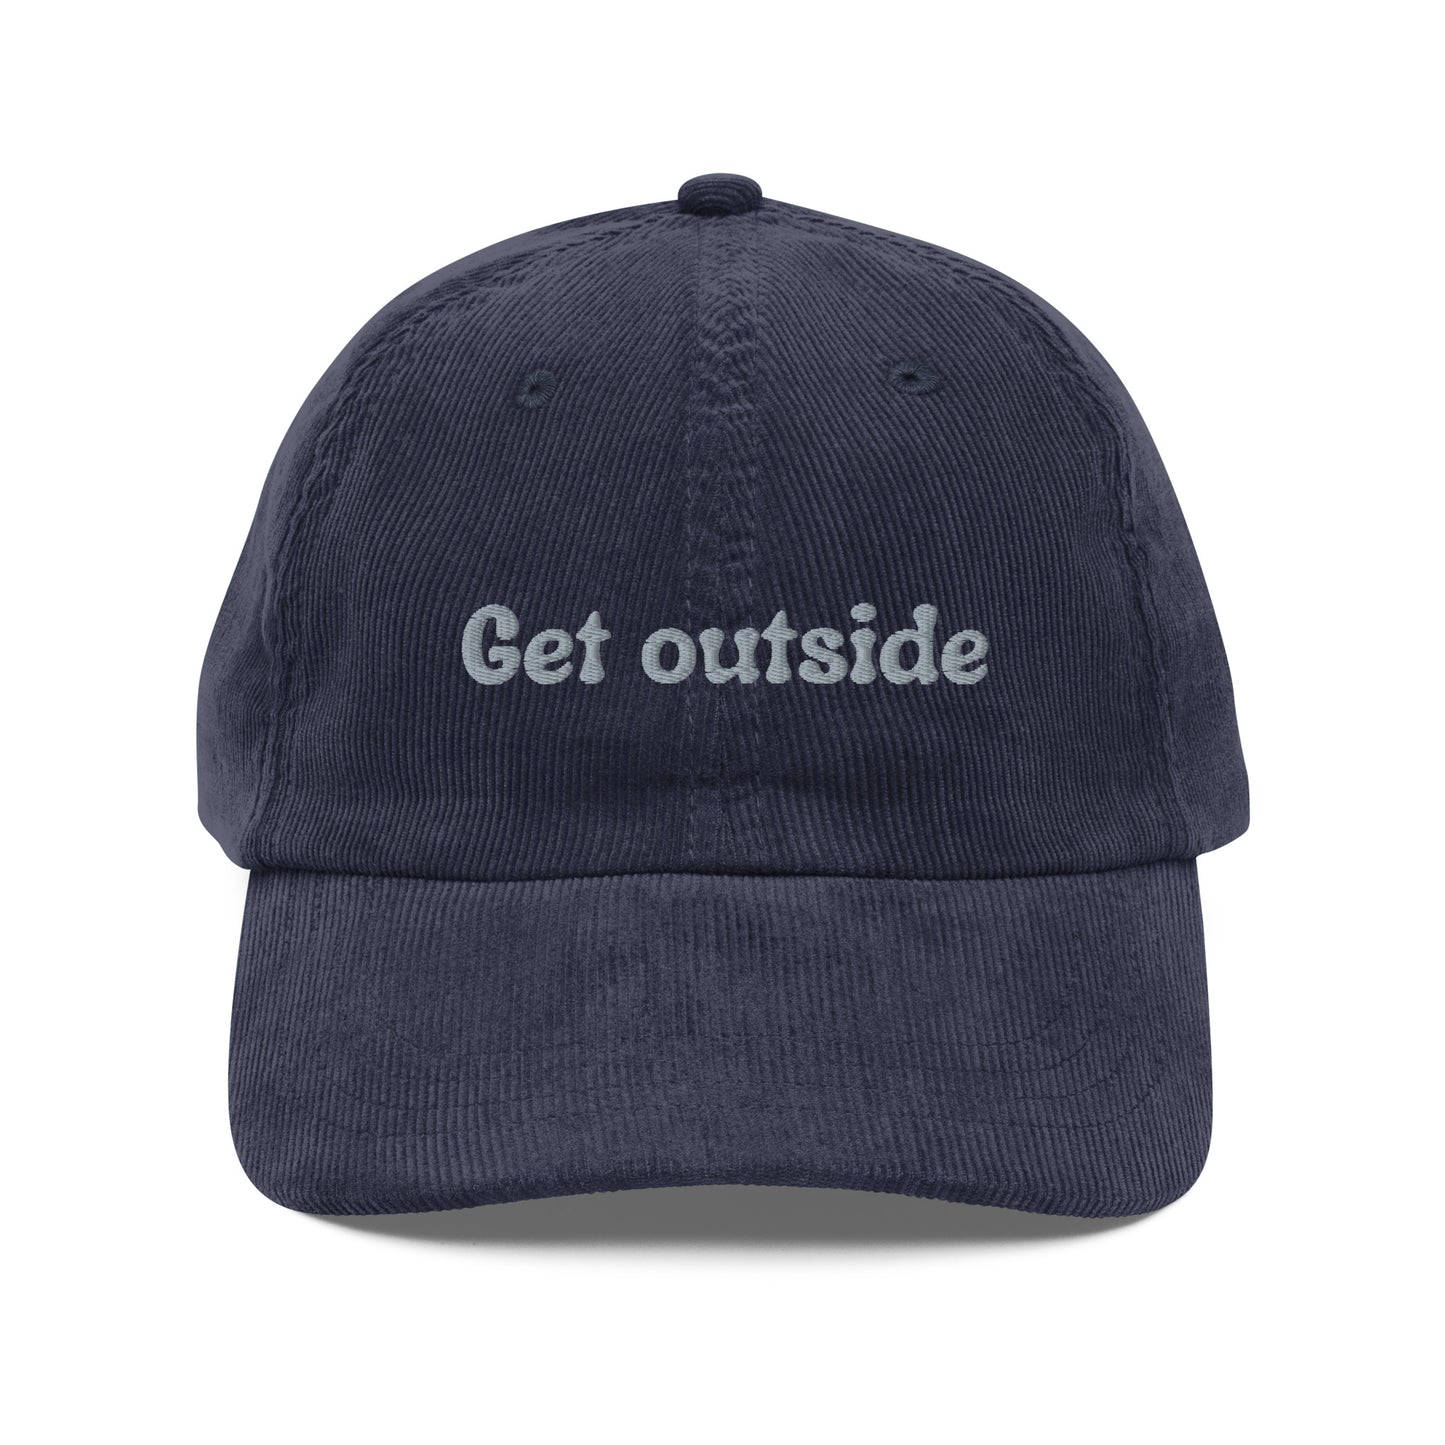 Get Outside Vintage Corduroy Hat